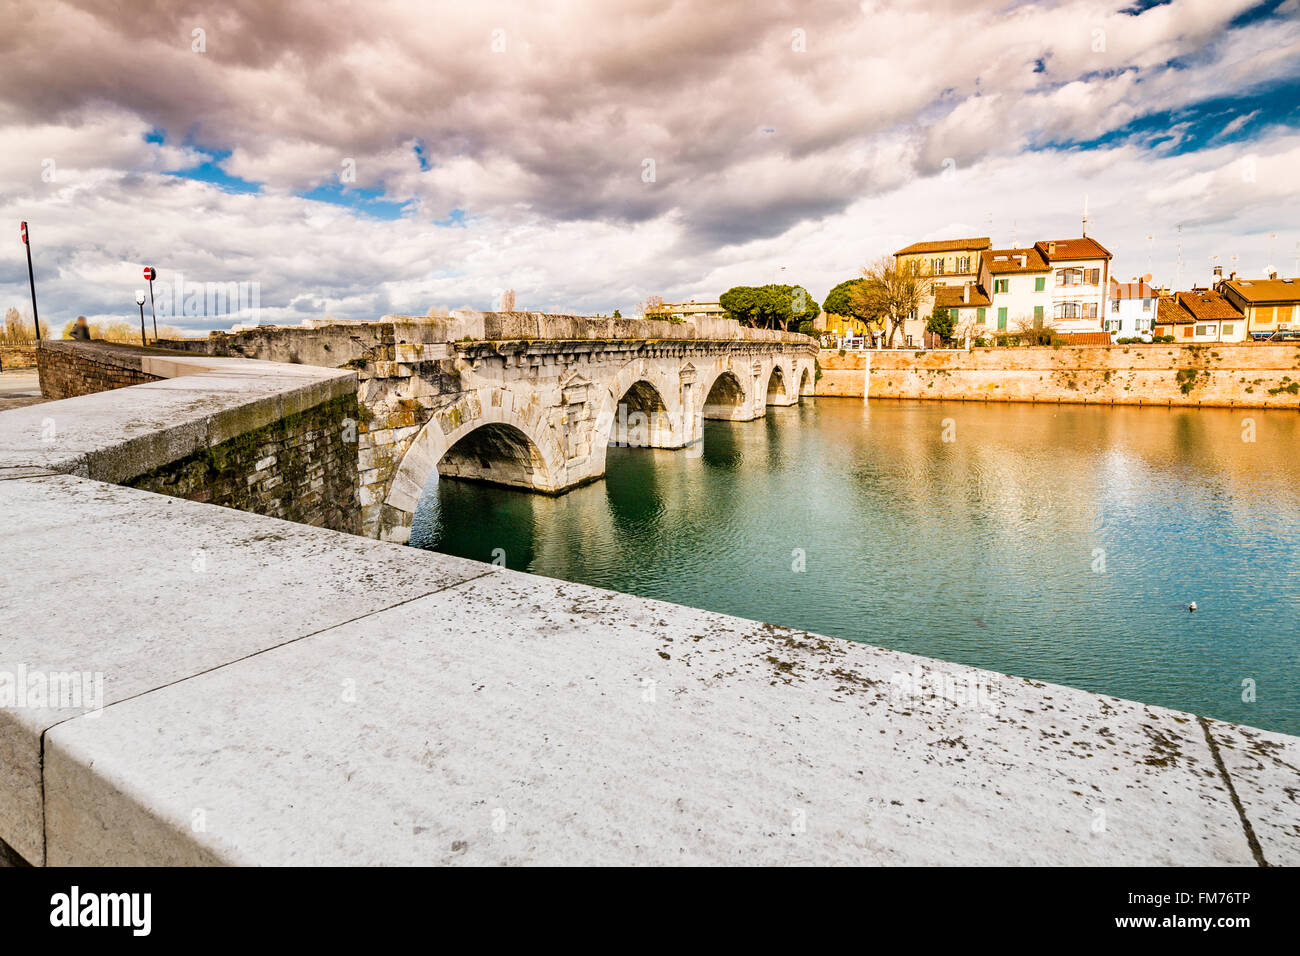 Puente de Tiberio en Rimini, una de las más sólidas estructuras arquitectónicas construidas por los romanos. Foto de stock